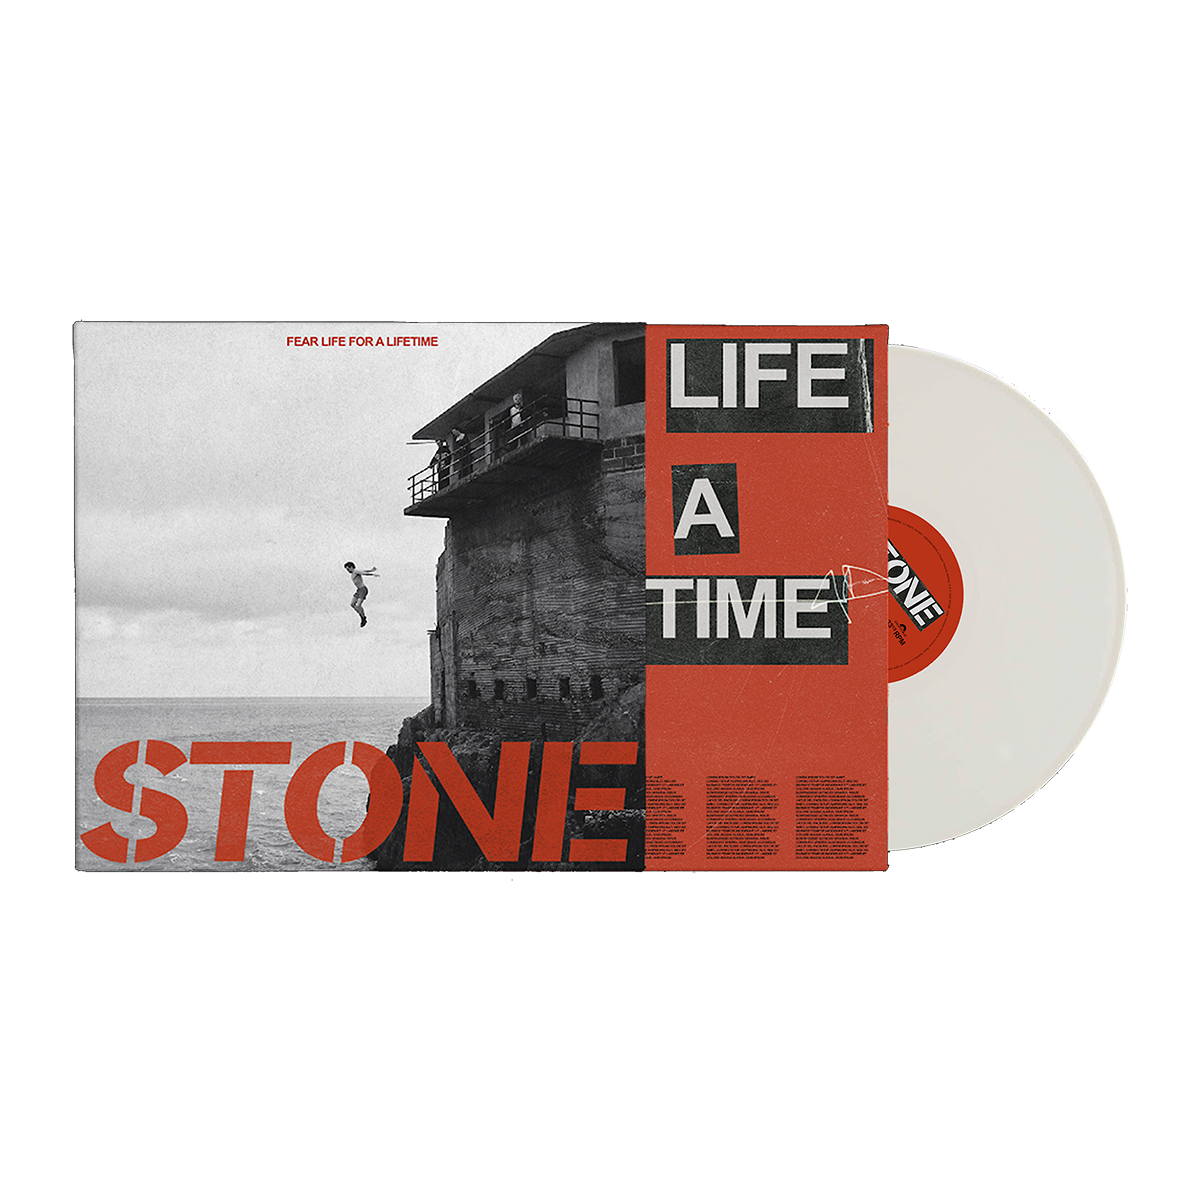 Fear Life For A Lifetime CD, White Vinyl